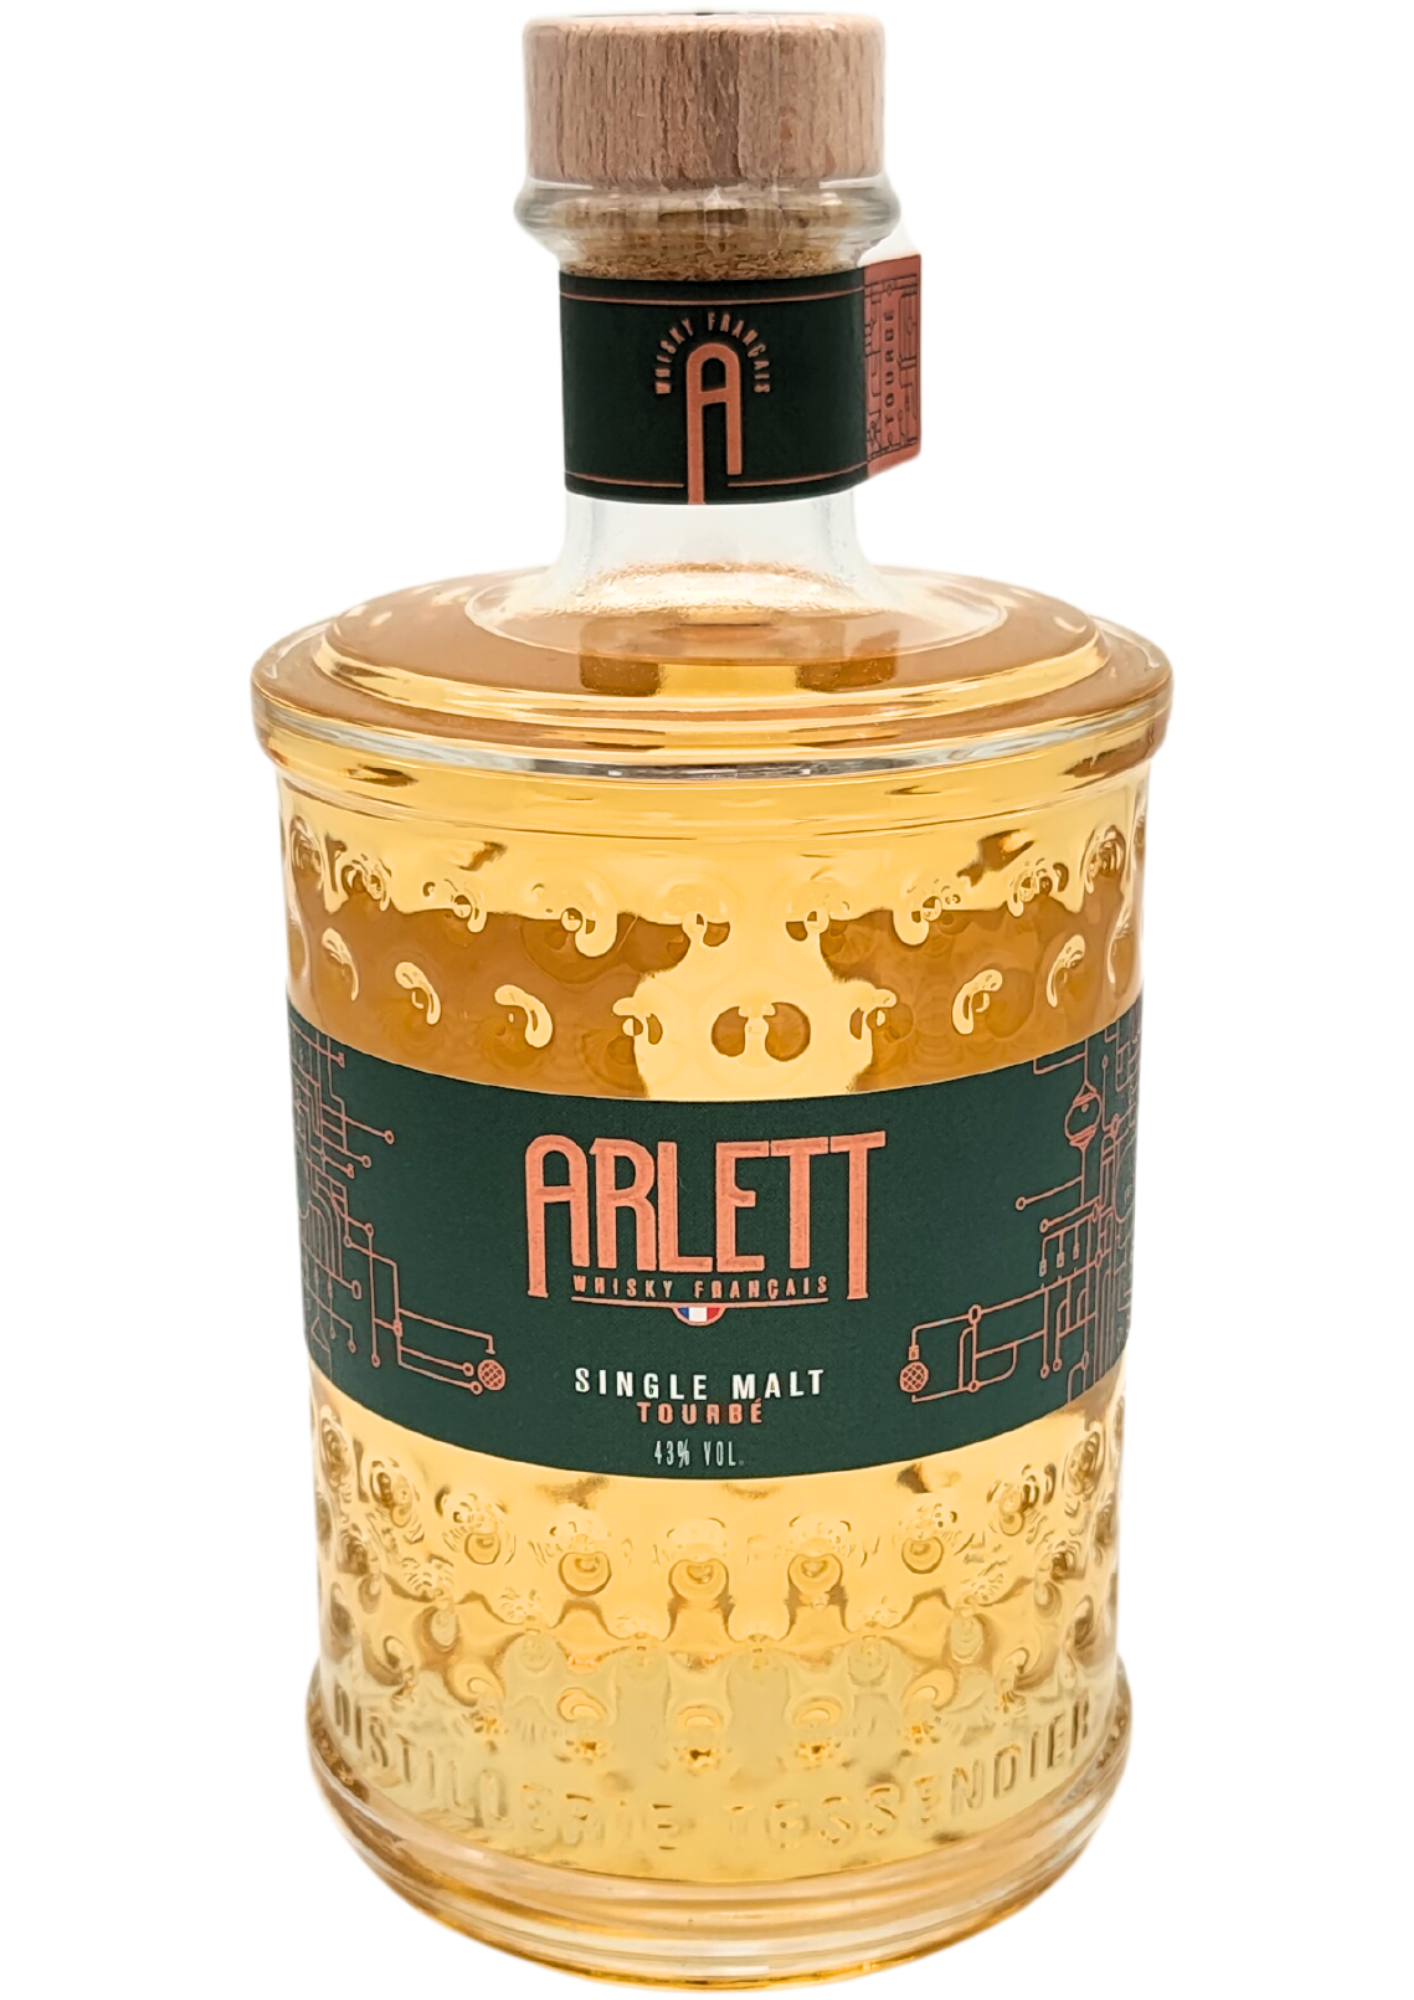 ARLETT - Single Malt Tourbe Whisky